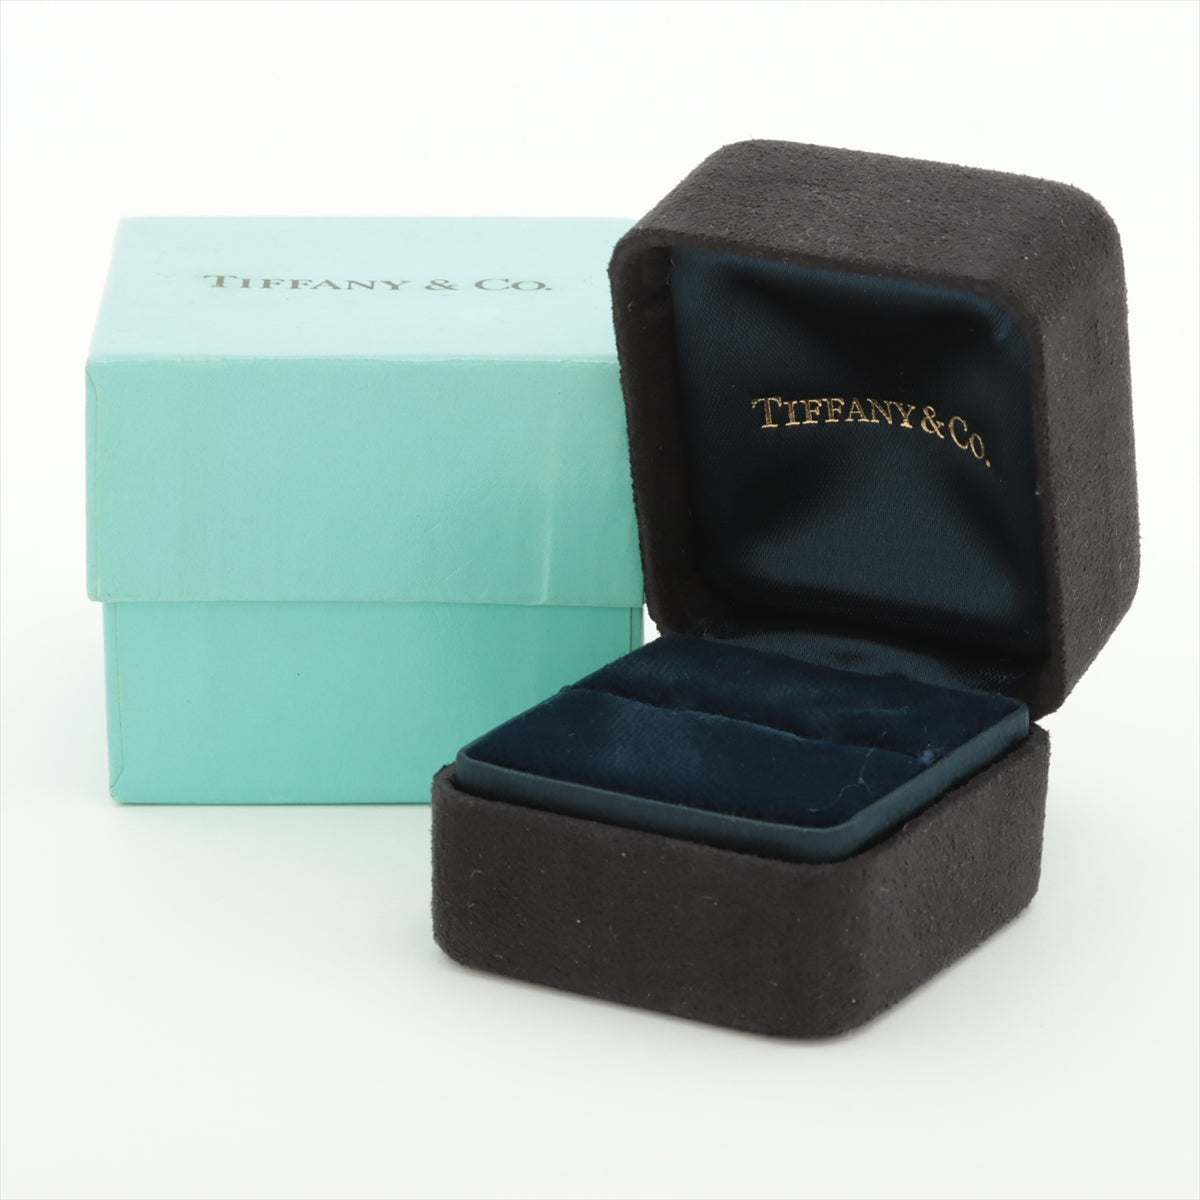 Tiffany Sapphire diamond rings 750(WG) 7.0g Sapphire shikake